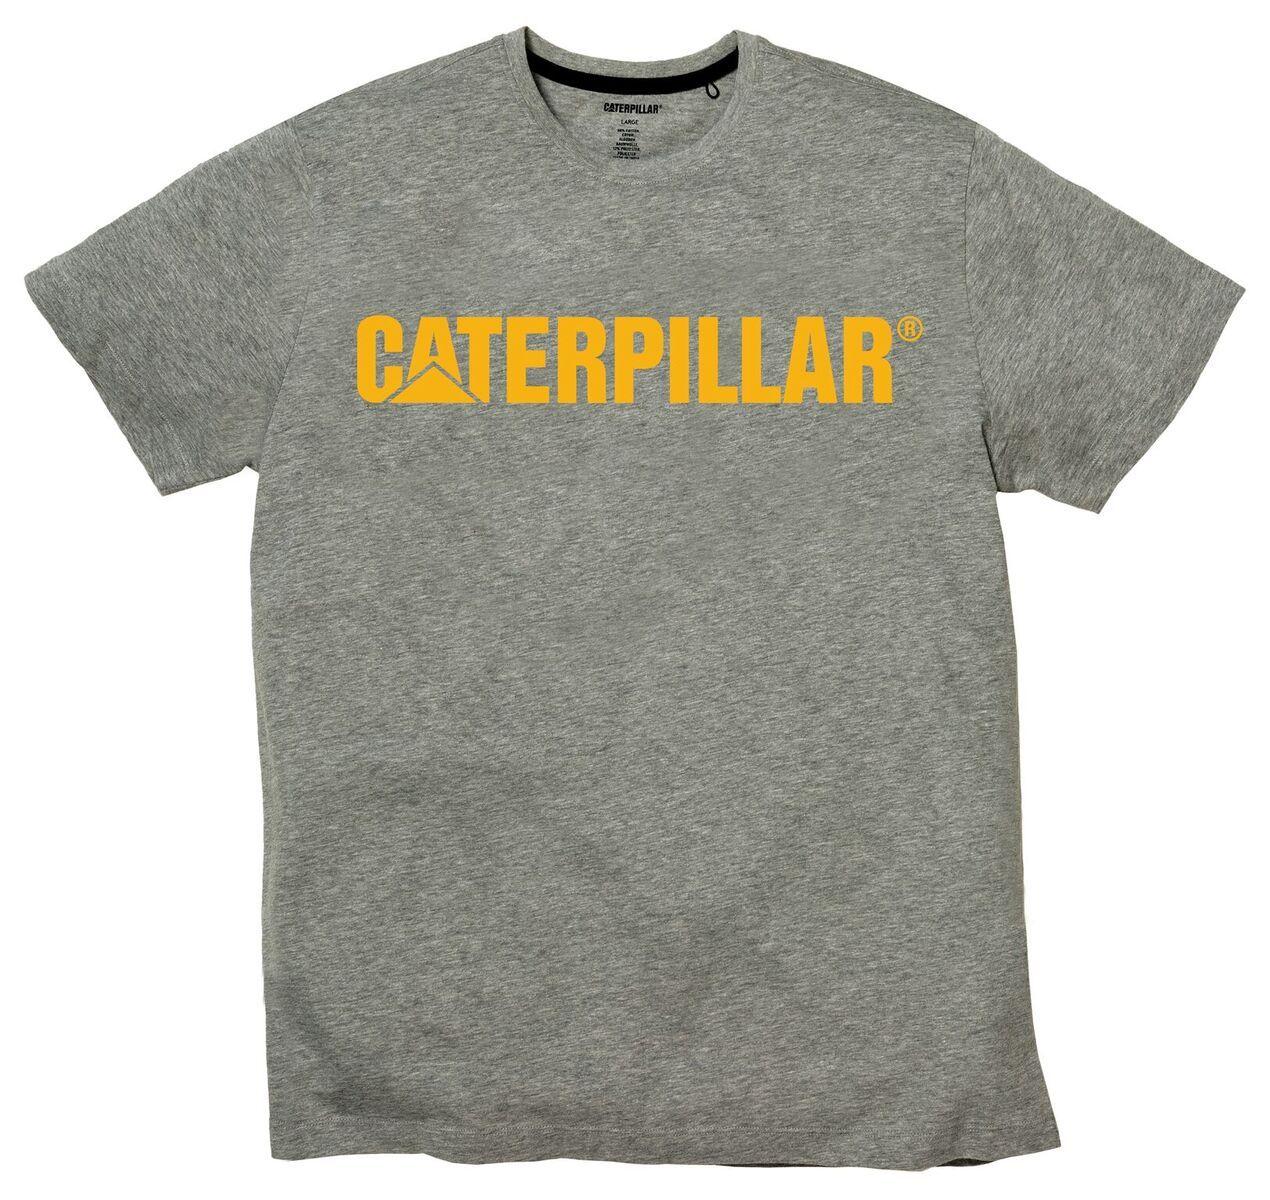 Caterpillar Logo - Caterpillar Logo Tee Shop Mens Clothing T Shirts : Shop